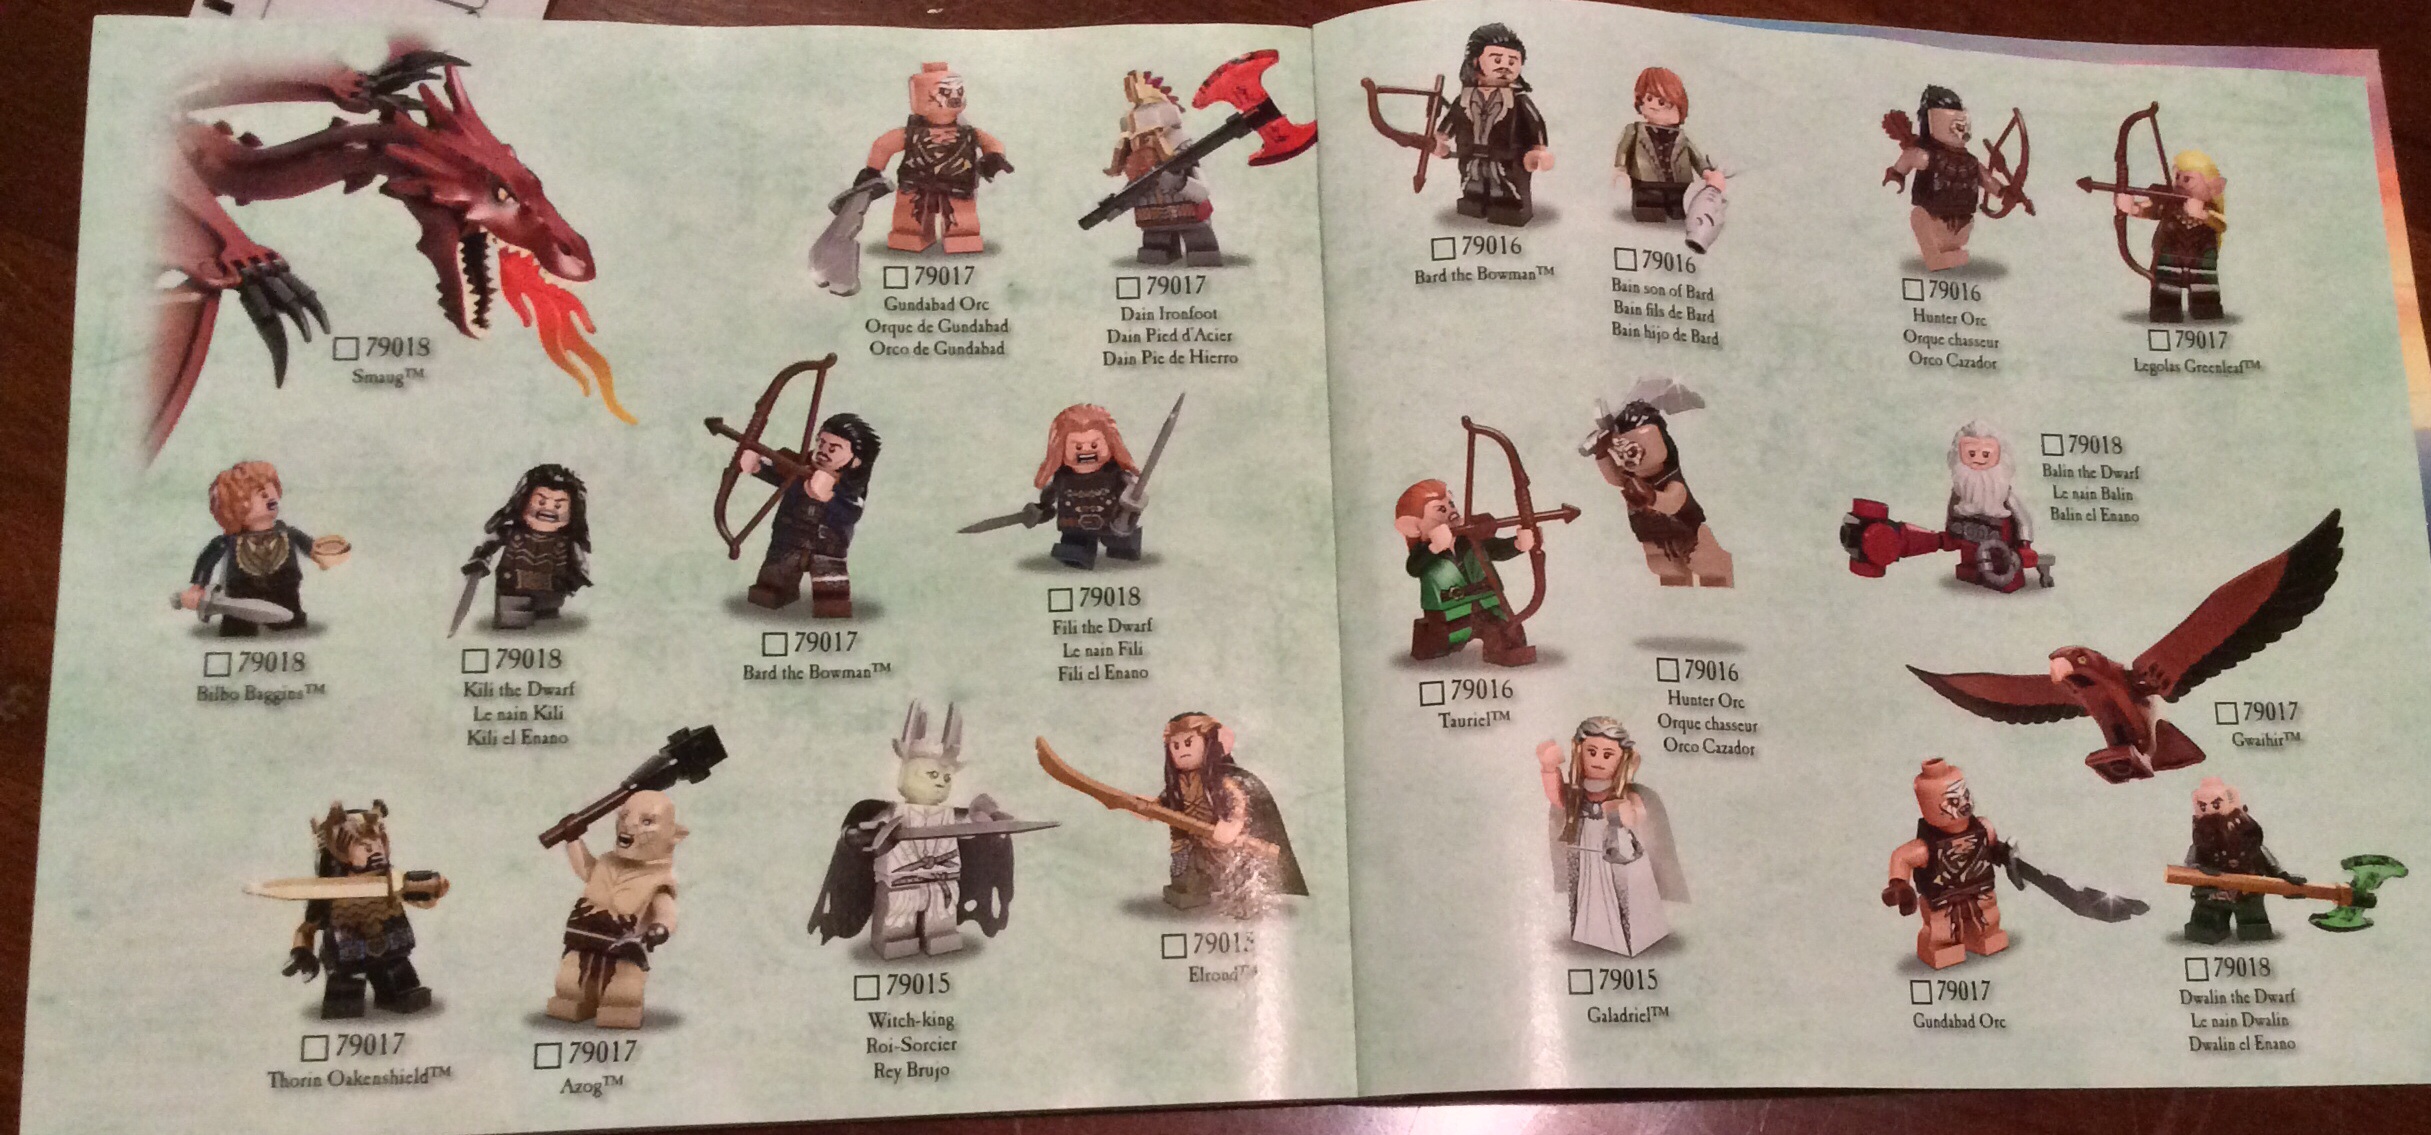 The Hobbit Battle Of Five Armies Lego Set Photo